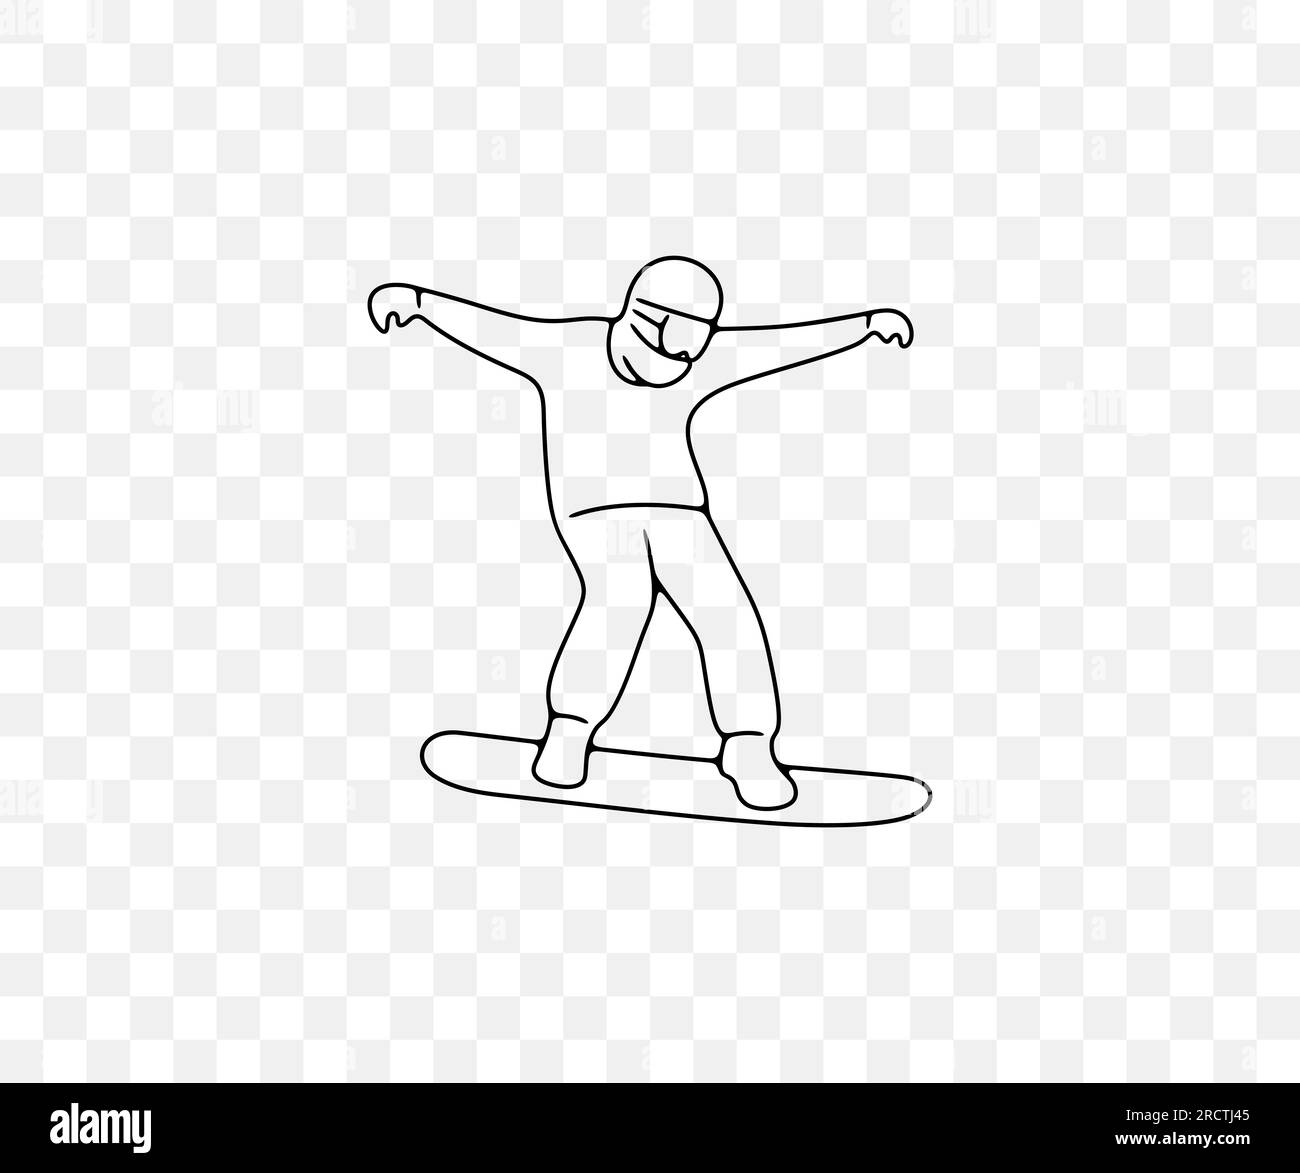 Snowboarder, snowboard et snowboard, conception graphique linéaire. Sport extrême, station de ski, mode de vie actif et nature, conception vectorielle et illustration Illustration de Vecteur